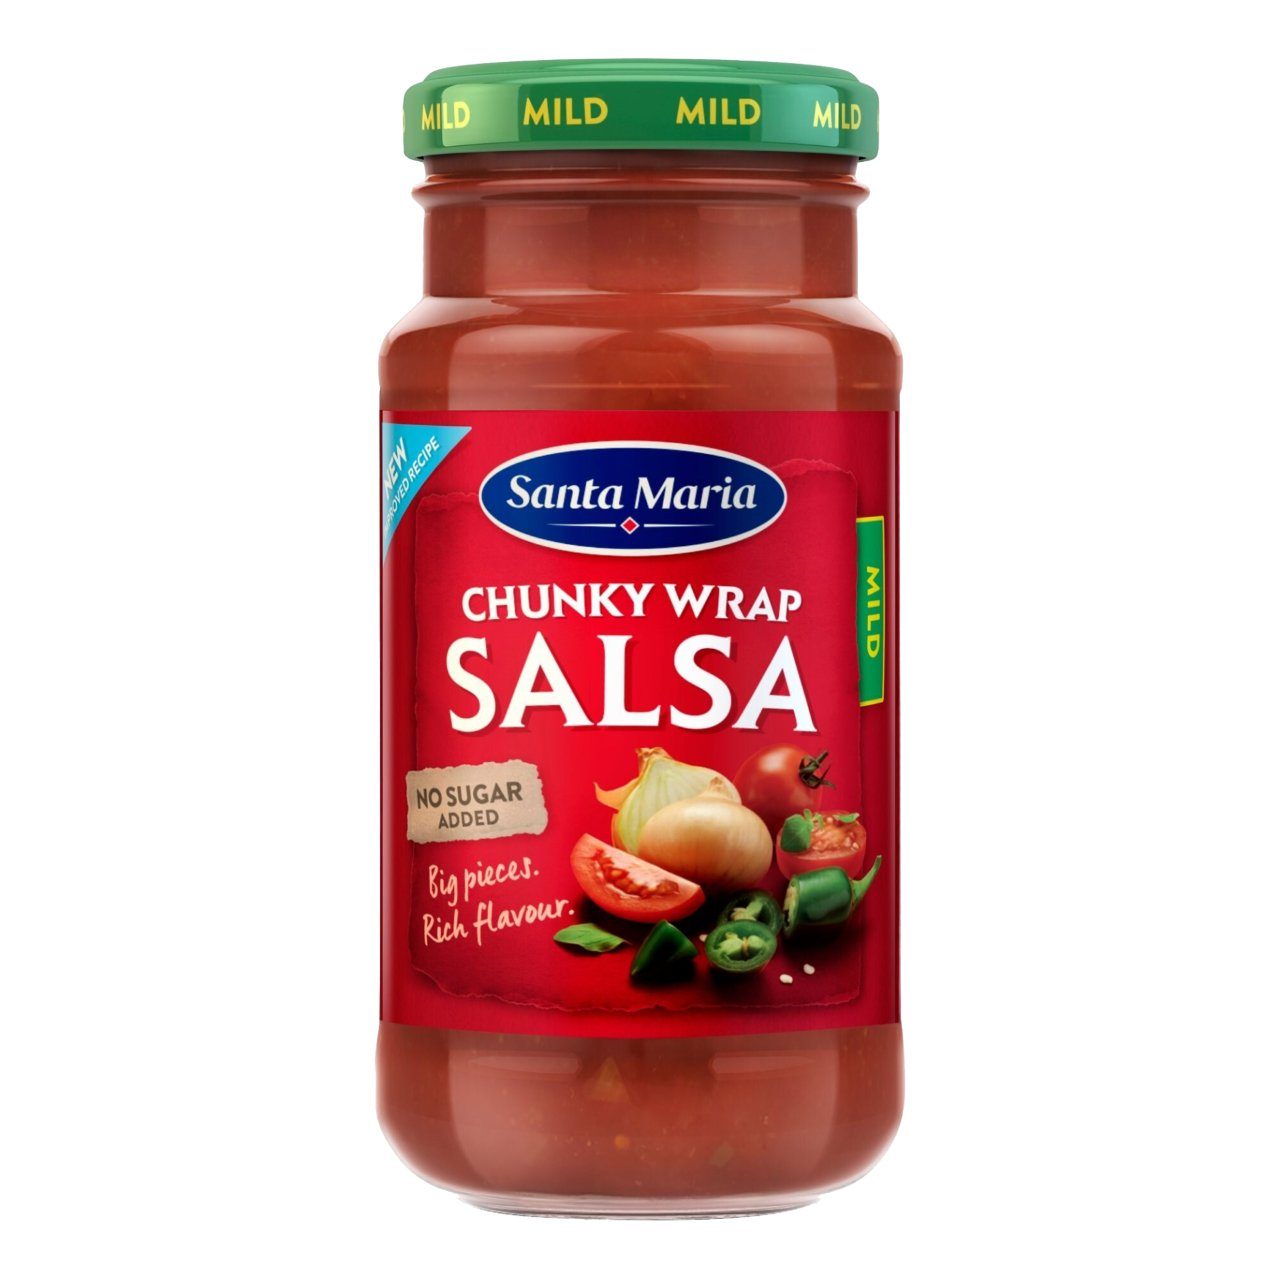 Chunky wrap salsa mild